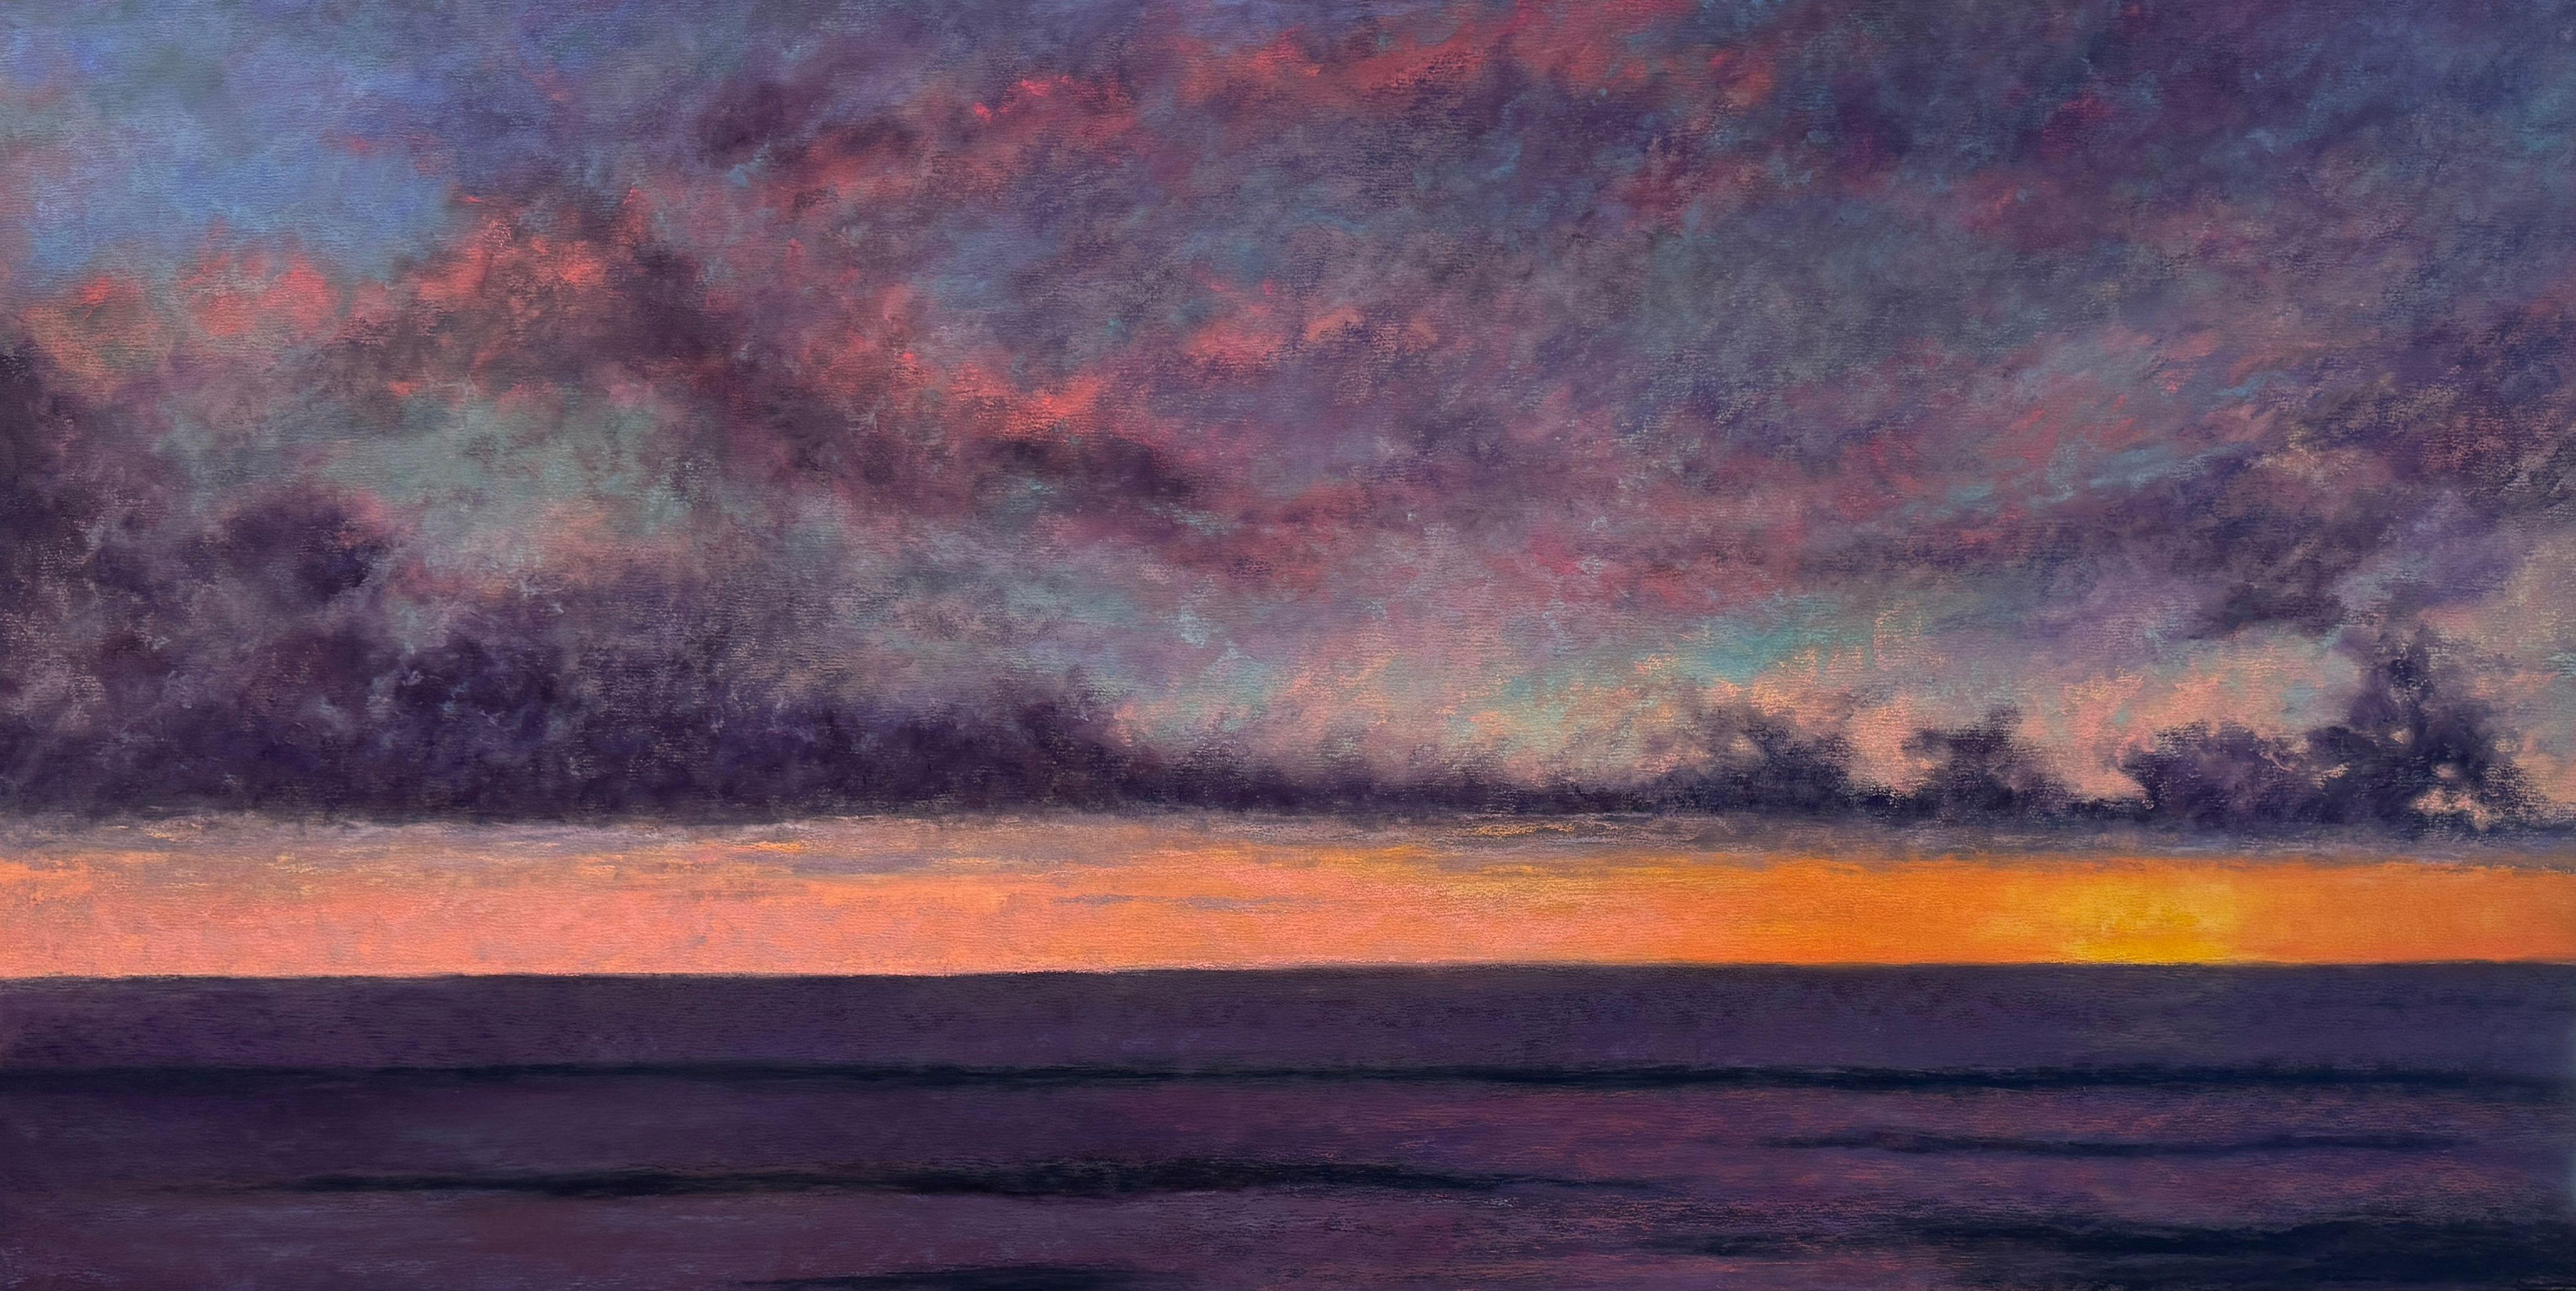 Dina Gardner Landscape Painting – Präsentation des Bildes – Impressionistisches pastellfarbenes Gemälde mit Sonnenuntergang